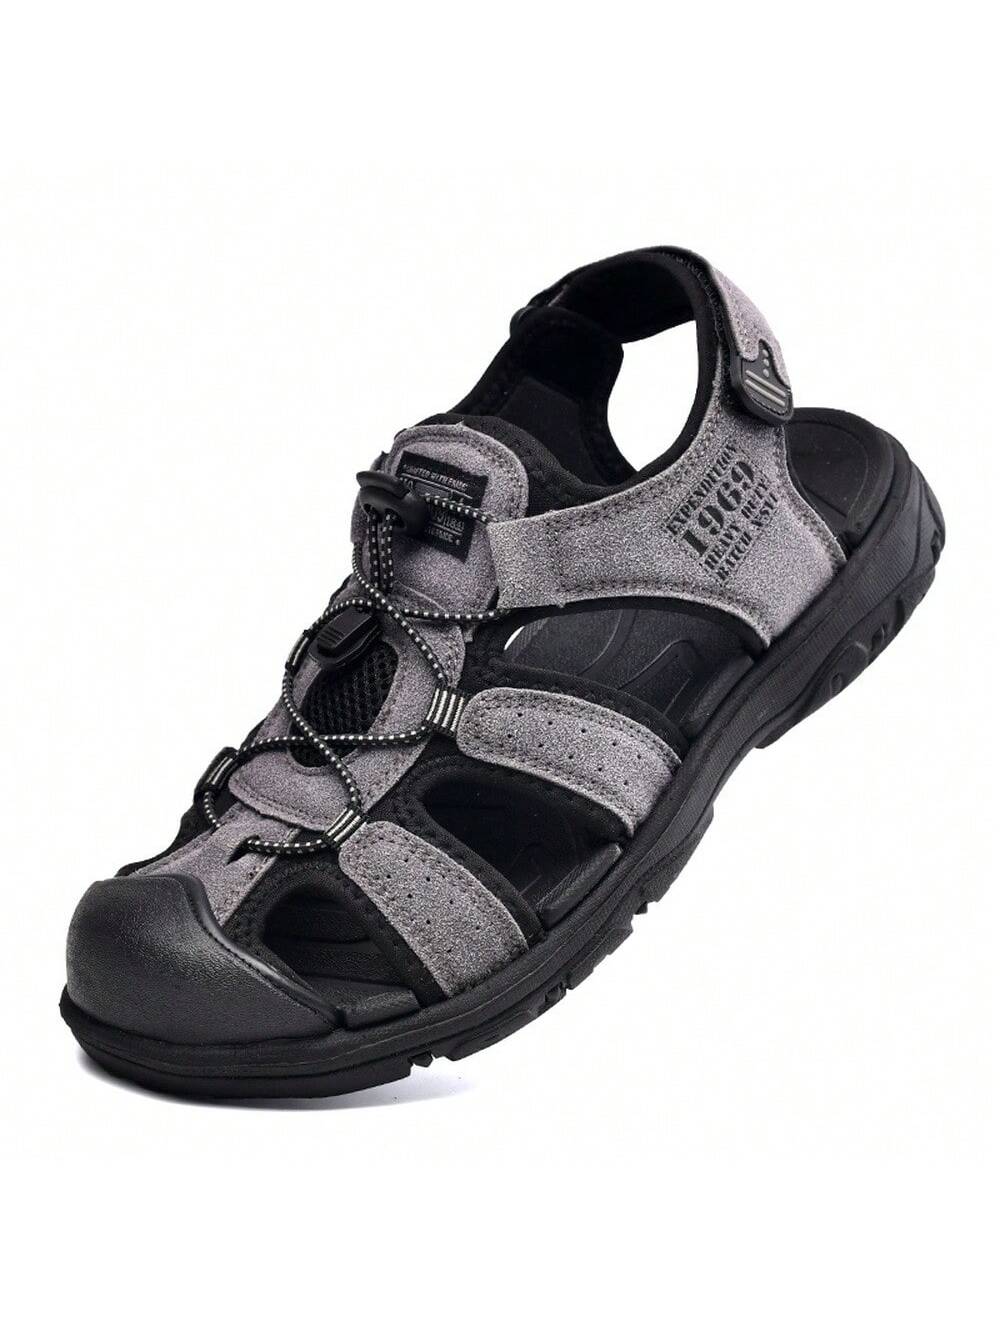 Мужские дышащие летние сандалии с закрытым носком, серый сандалии для мужчин 2021 летняя мужская пляжная обувь нескользящие мужские сандалии износостойкие дышащие тапочки спортивная обувь для но